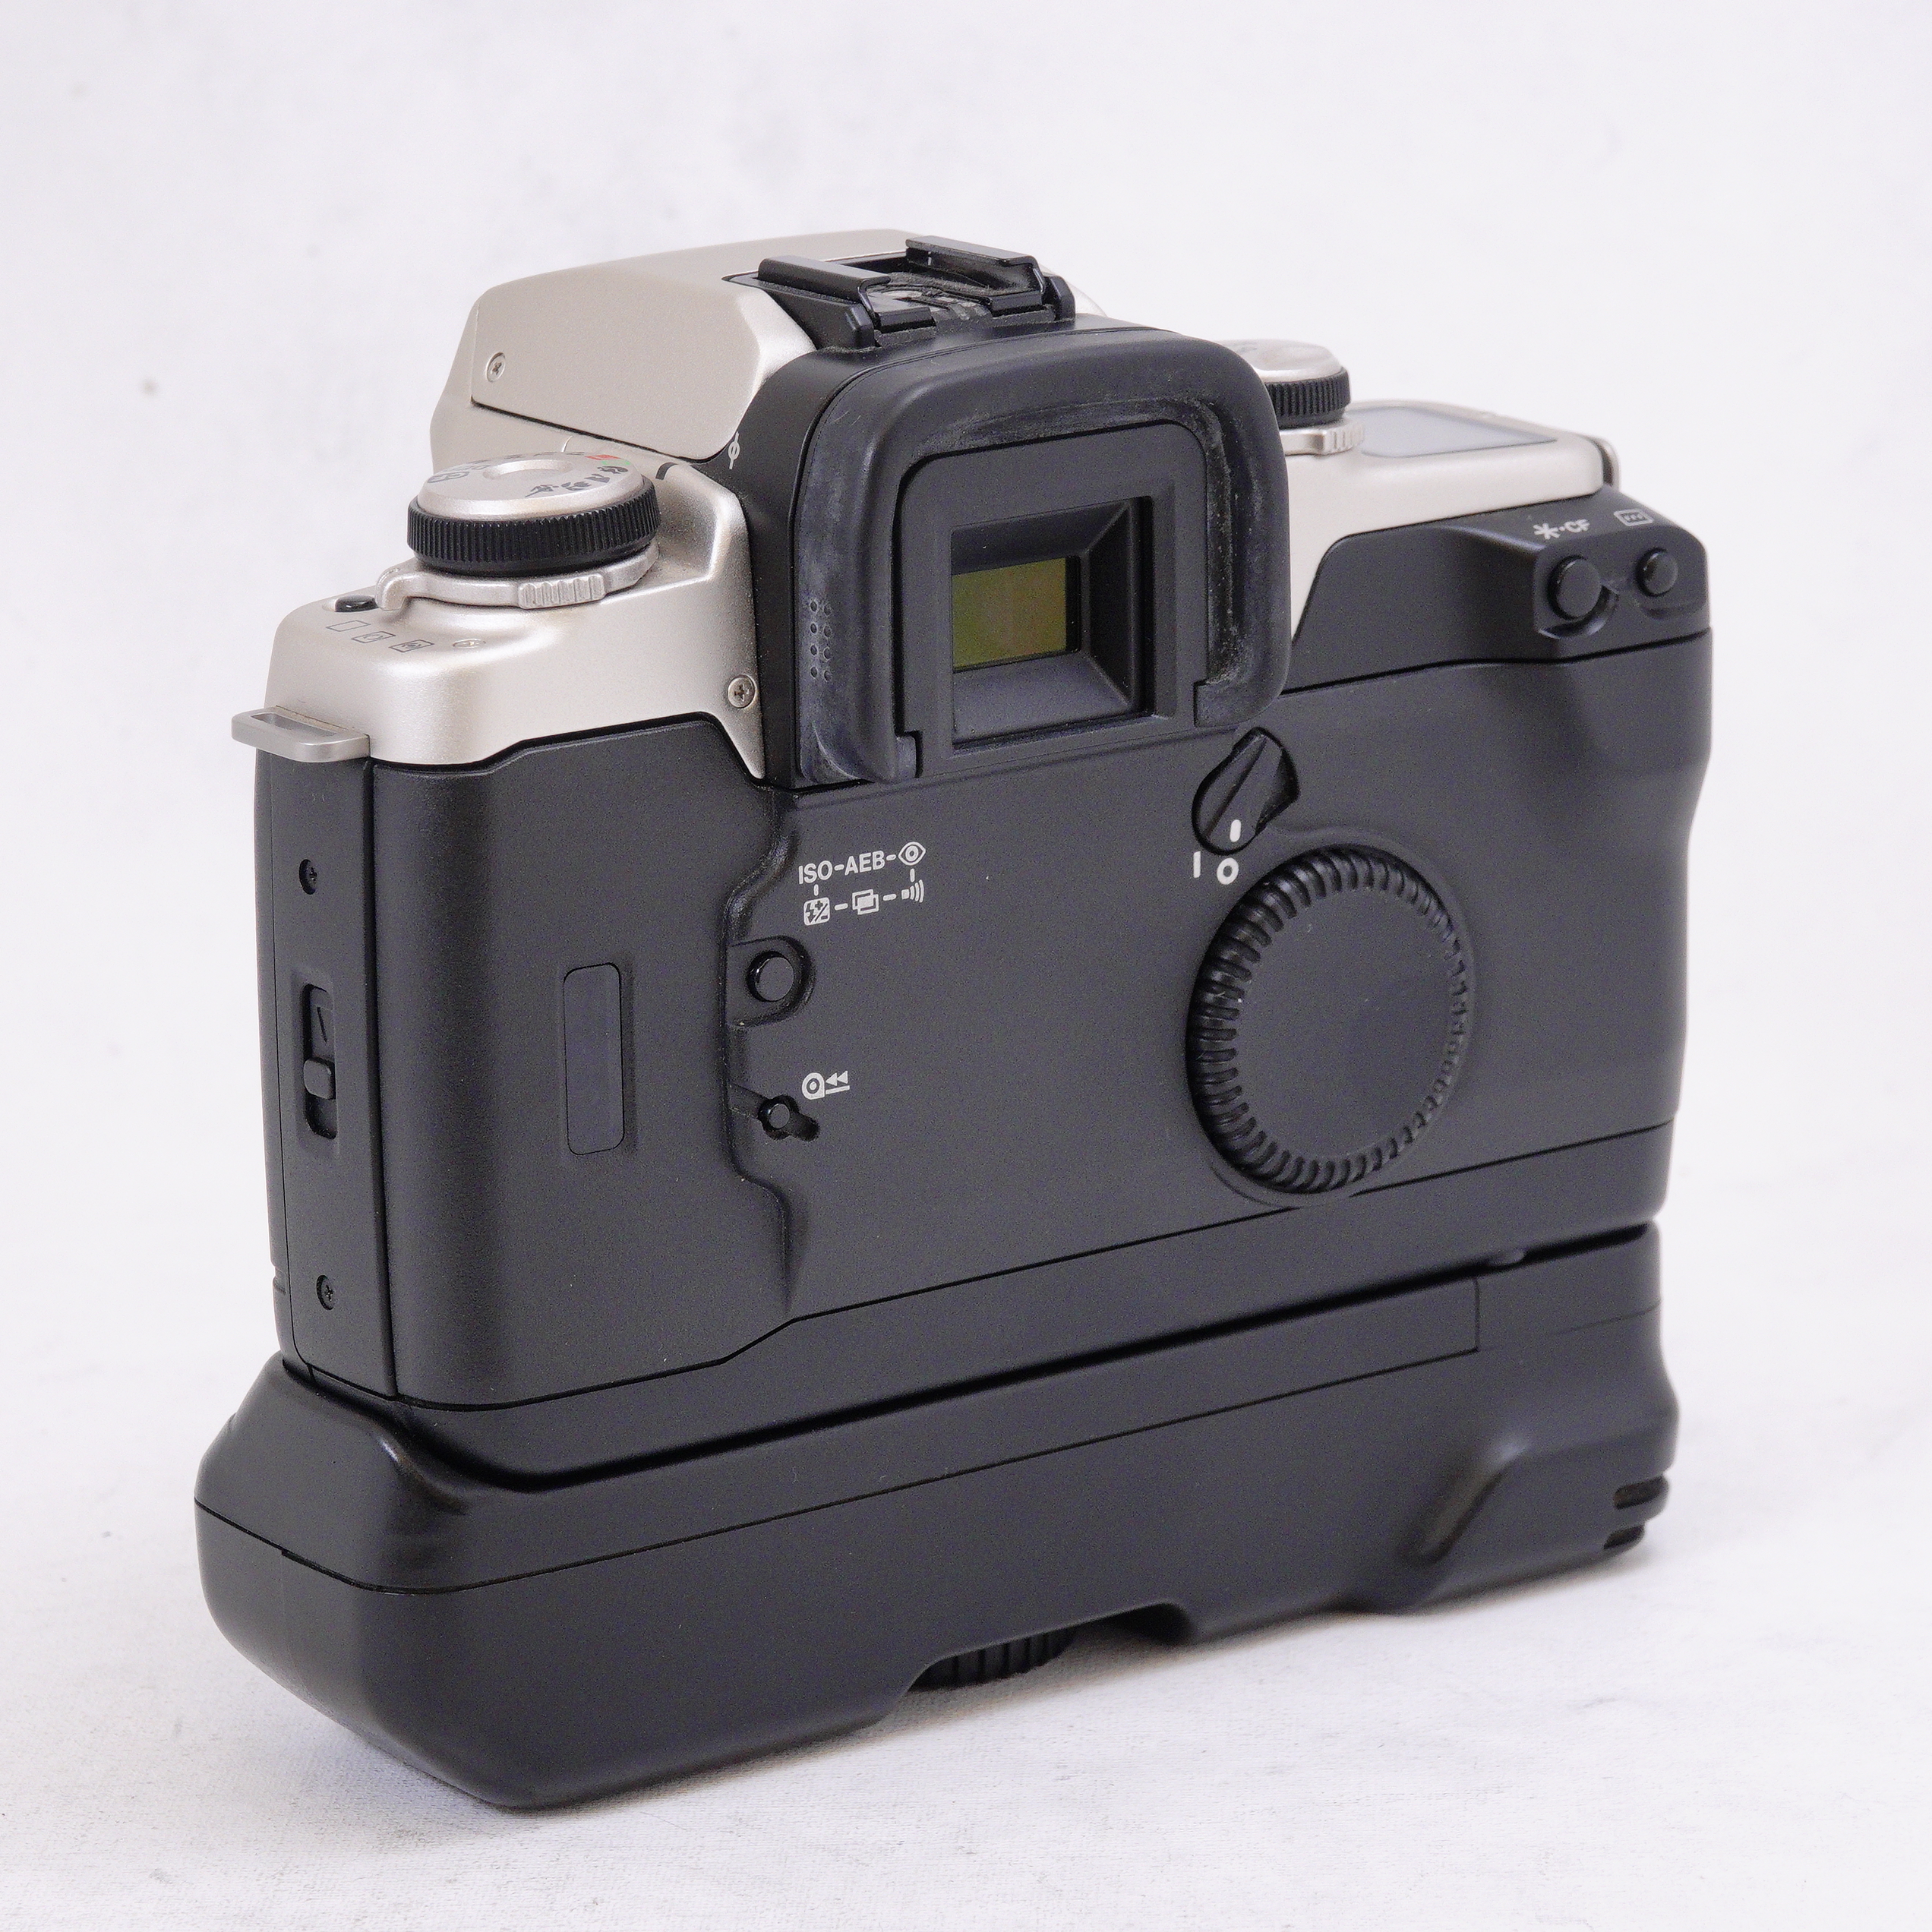 Canon EOS Elan II de 35 mm - Usado